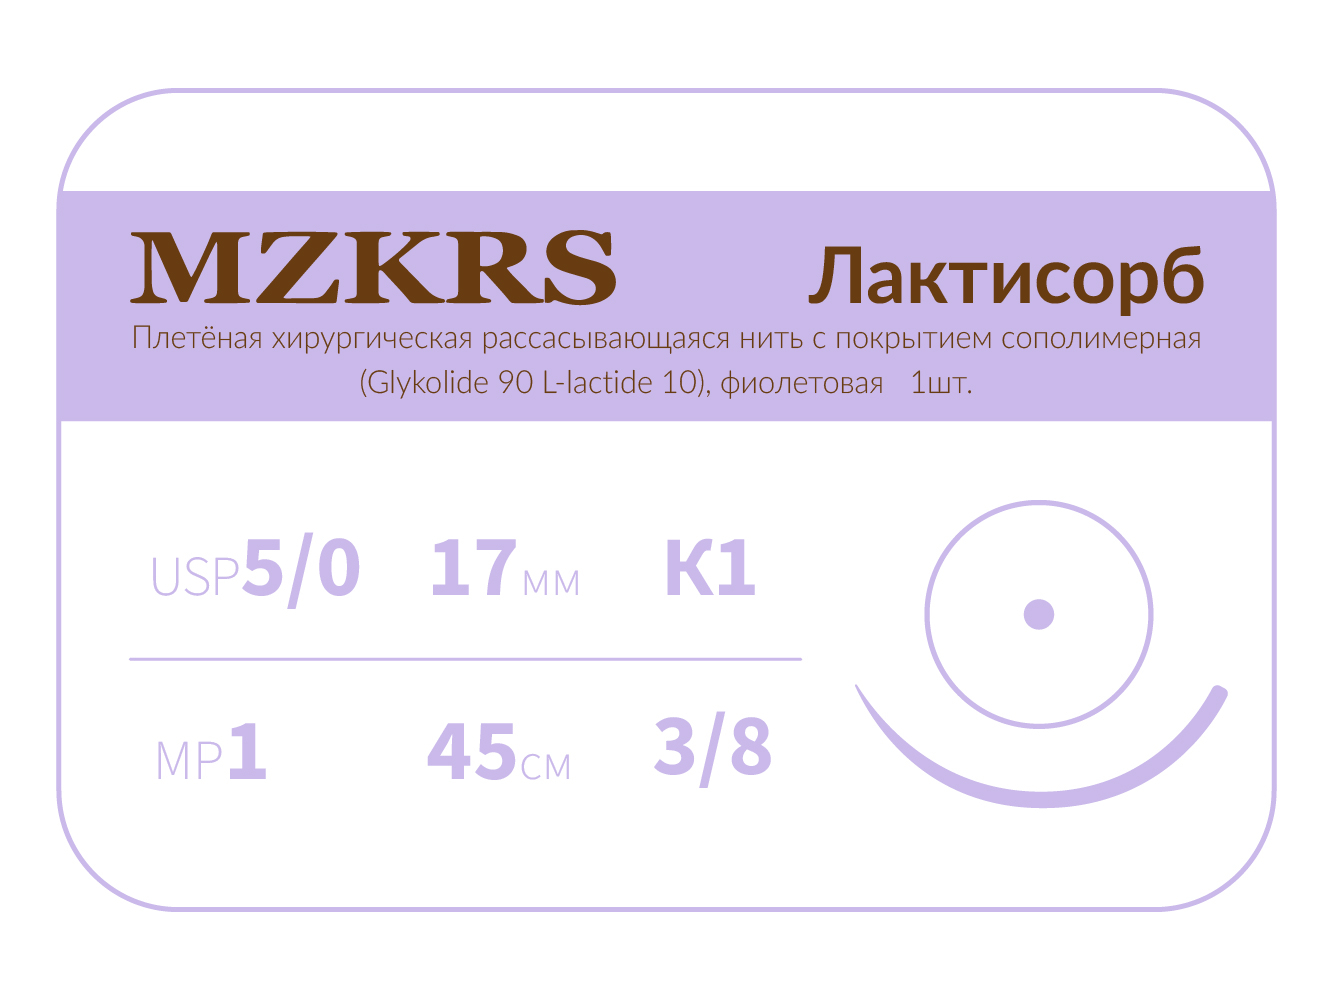 1738К1-Premium-5/0 (1)45 ПГЛ ЛАКТИСОРБ хирургическая нить сополимерная, MZKRS (Россия)